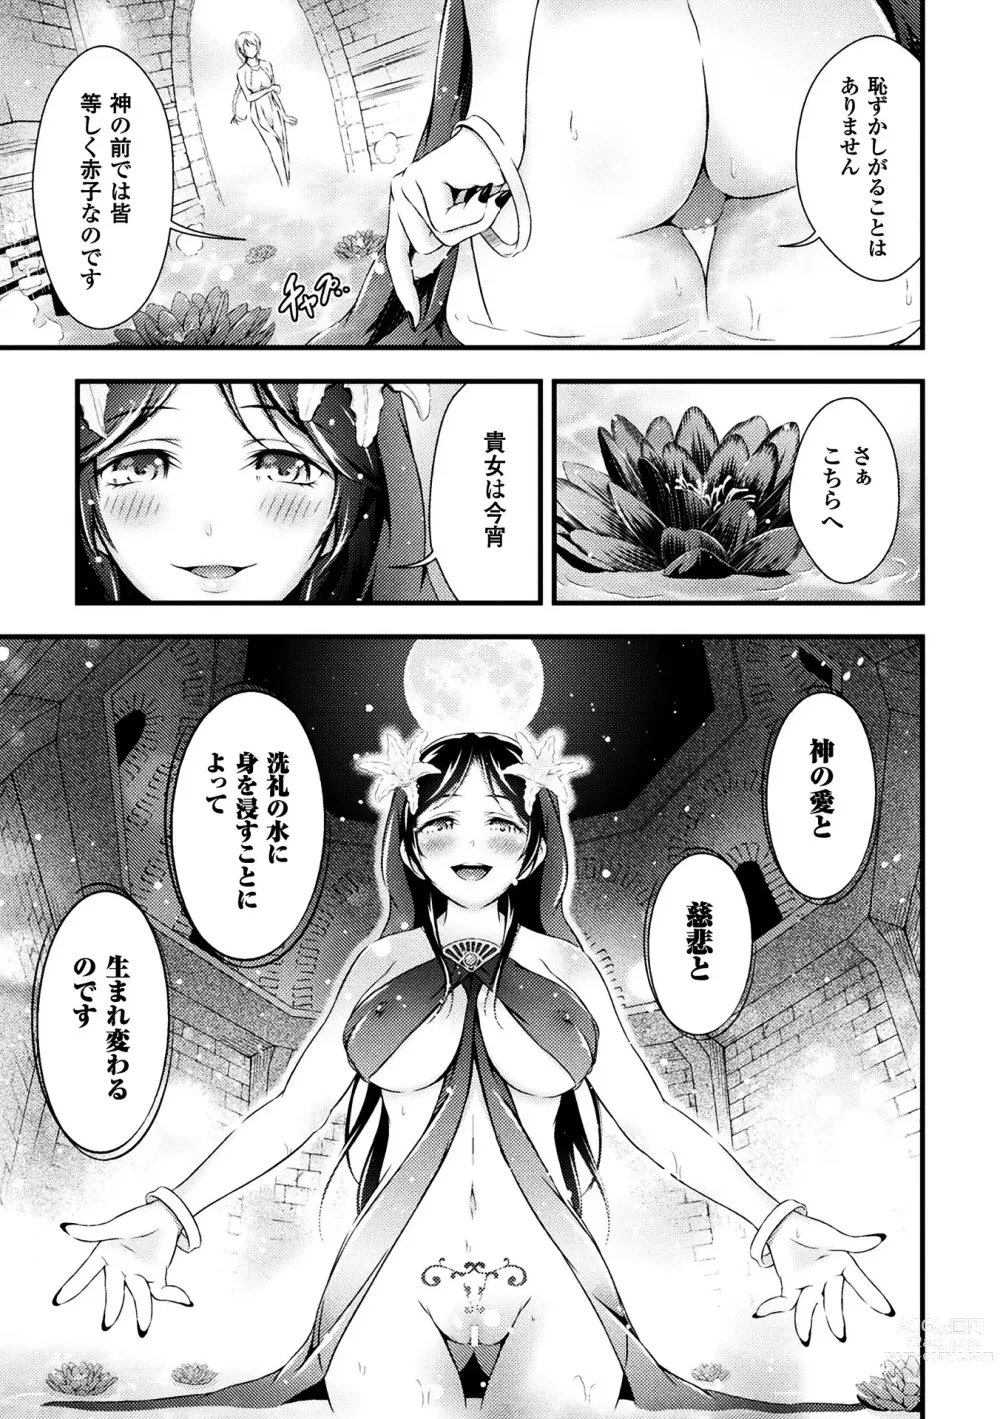 Page 7 of doujinshi Uruwashi no Seibo